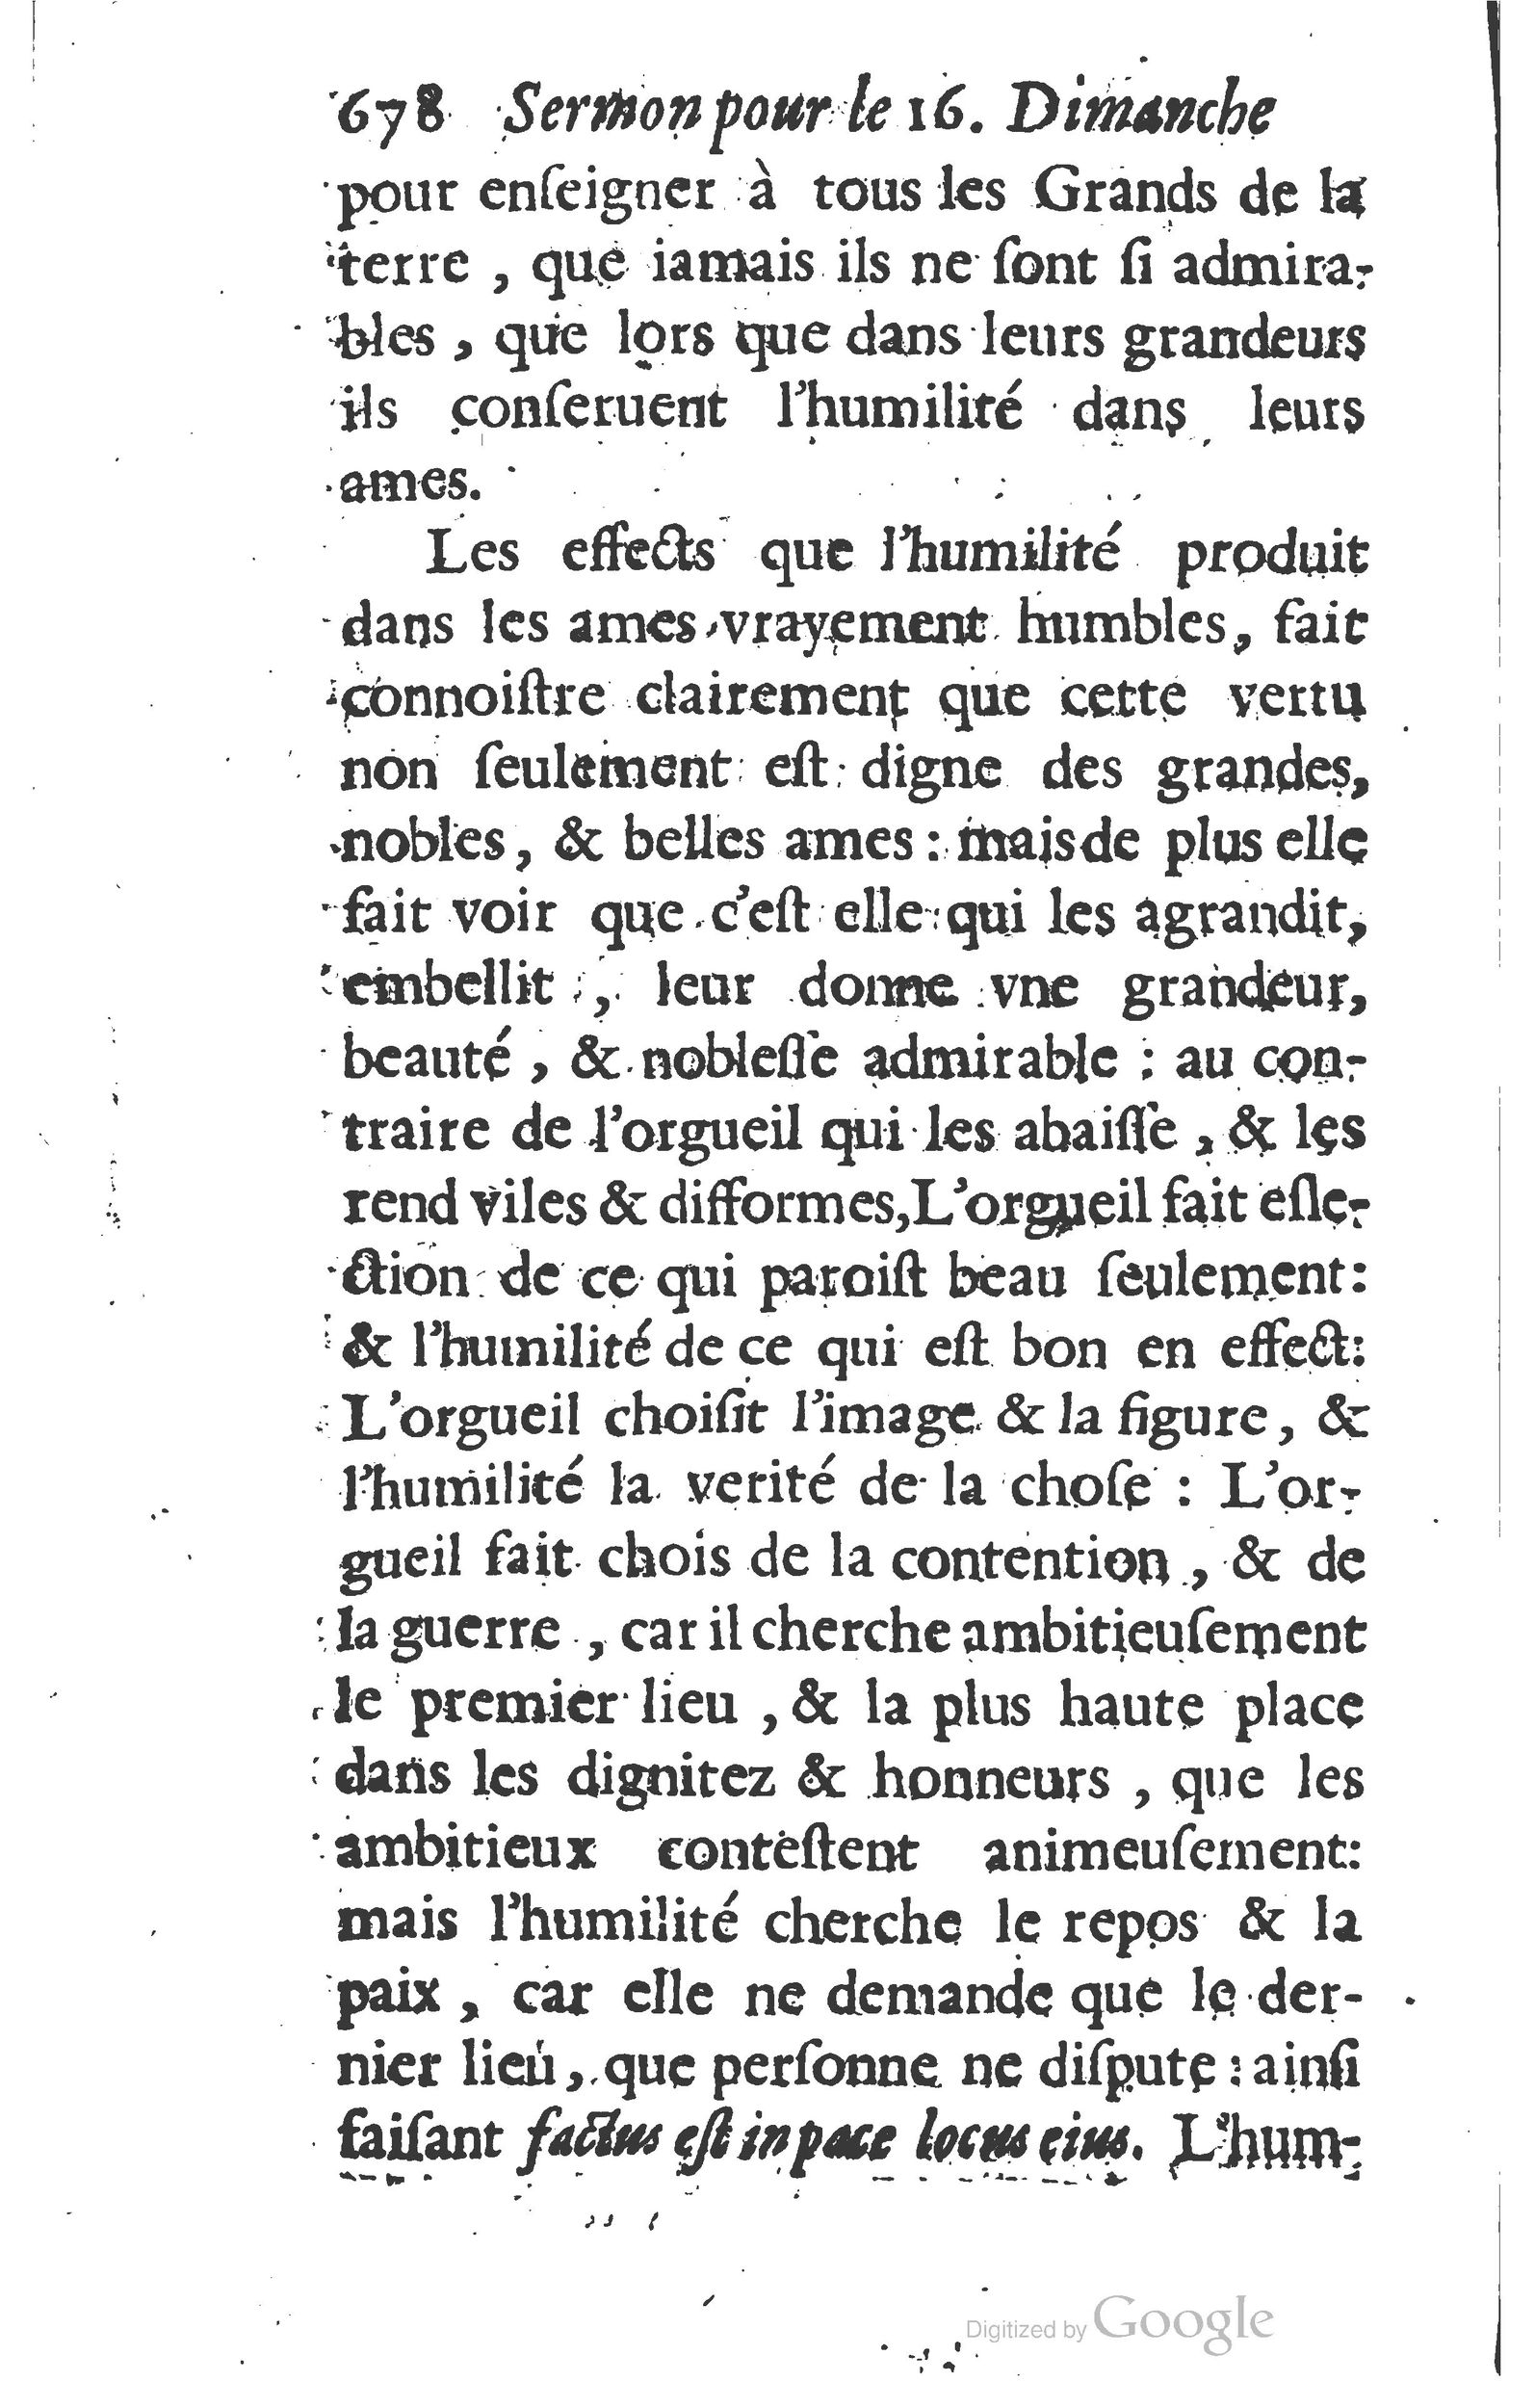 1629 Sermons ou trésor de la piété chrétienne_Page_701.jpg